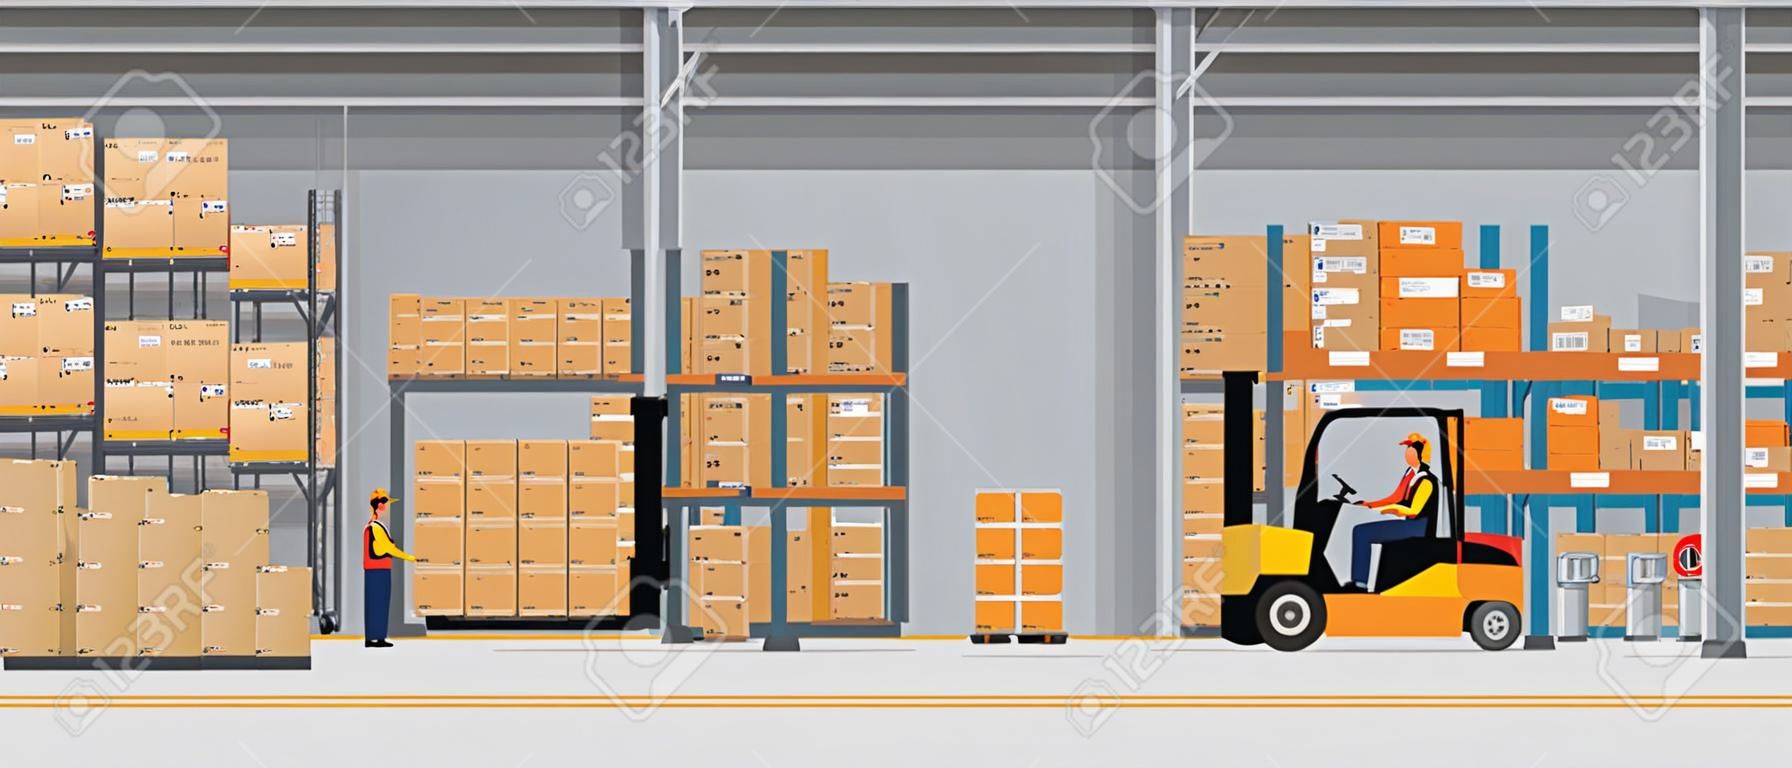 Interno del magazzino con scatole su rack e persone che lavorano. Concetto di servizio di consegna logistica in stile piatto e solido. Illustrazione di vettore.